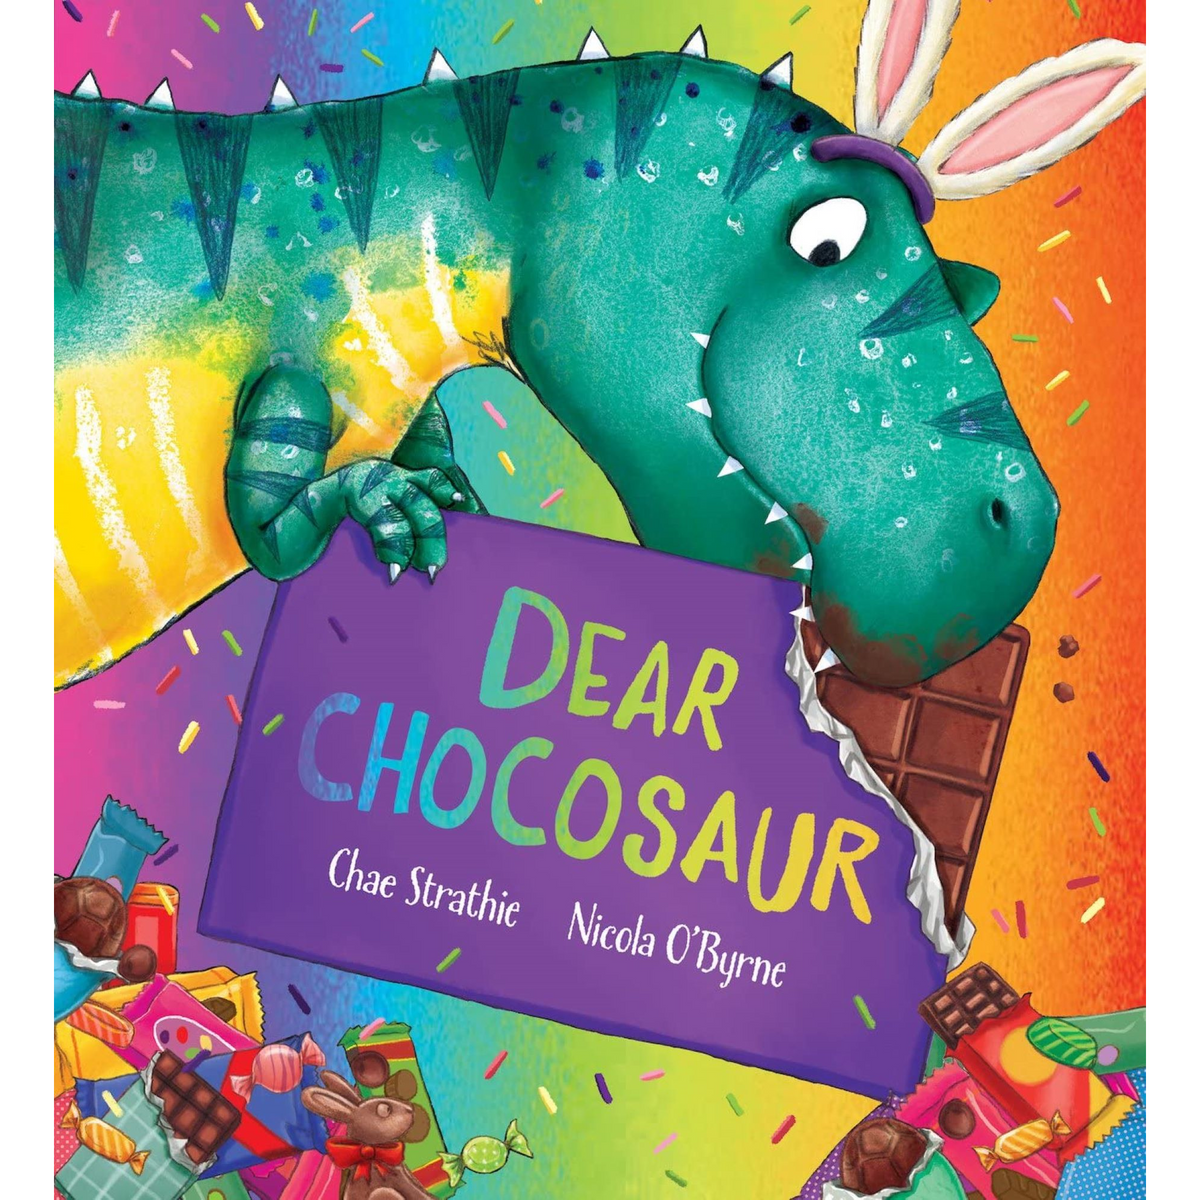 Dear Dinosaur: Dear Chocosaur